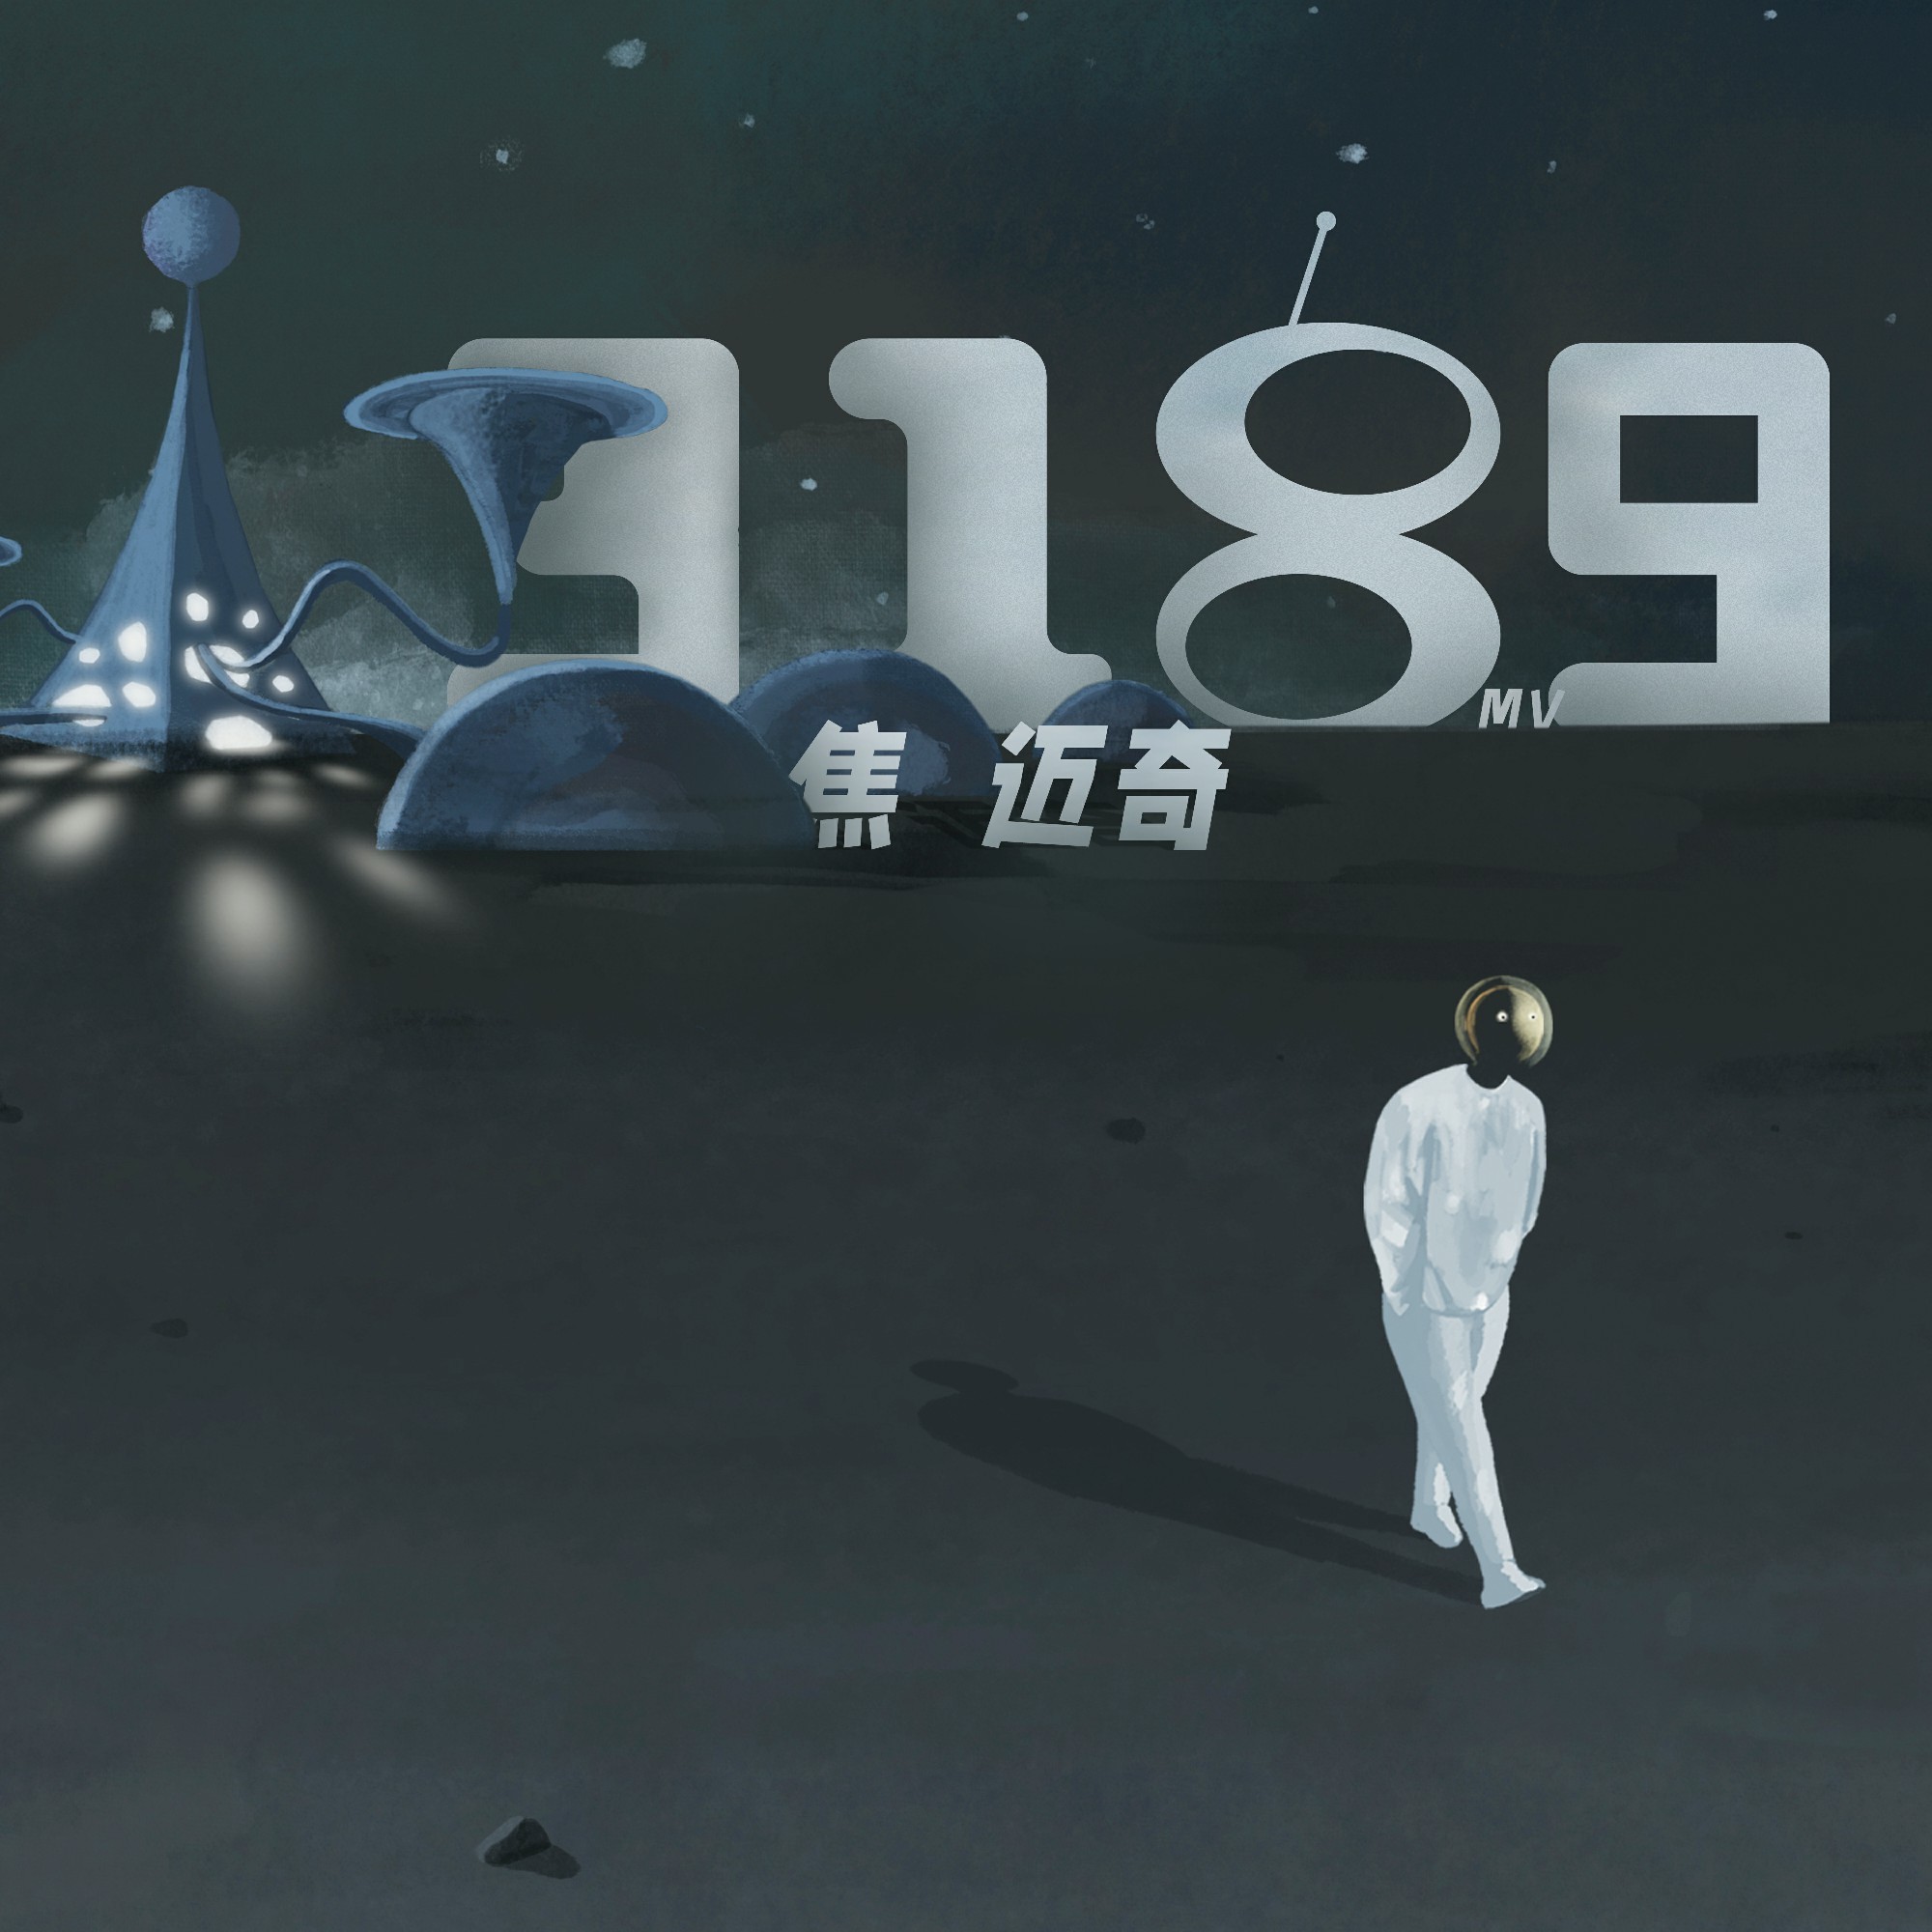 焦迈奇《3189》MV上线，用想象力涂鸦出Z世代的宇宙